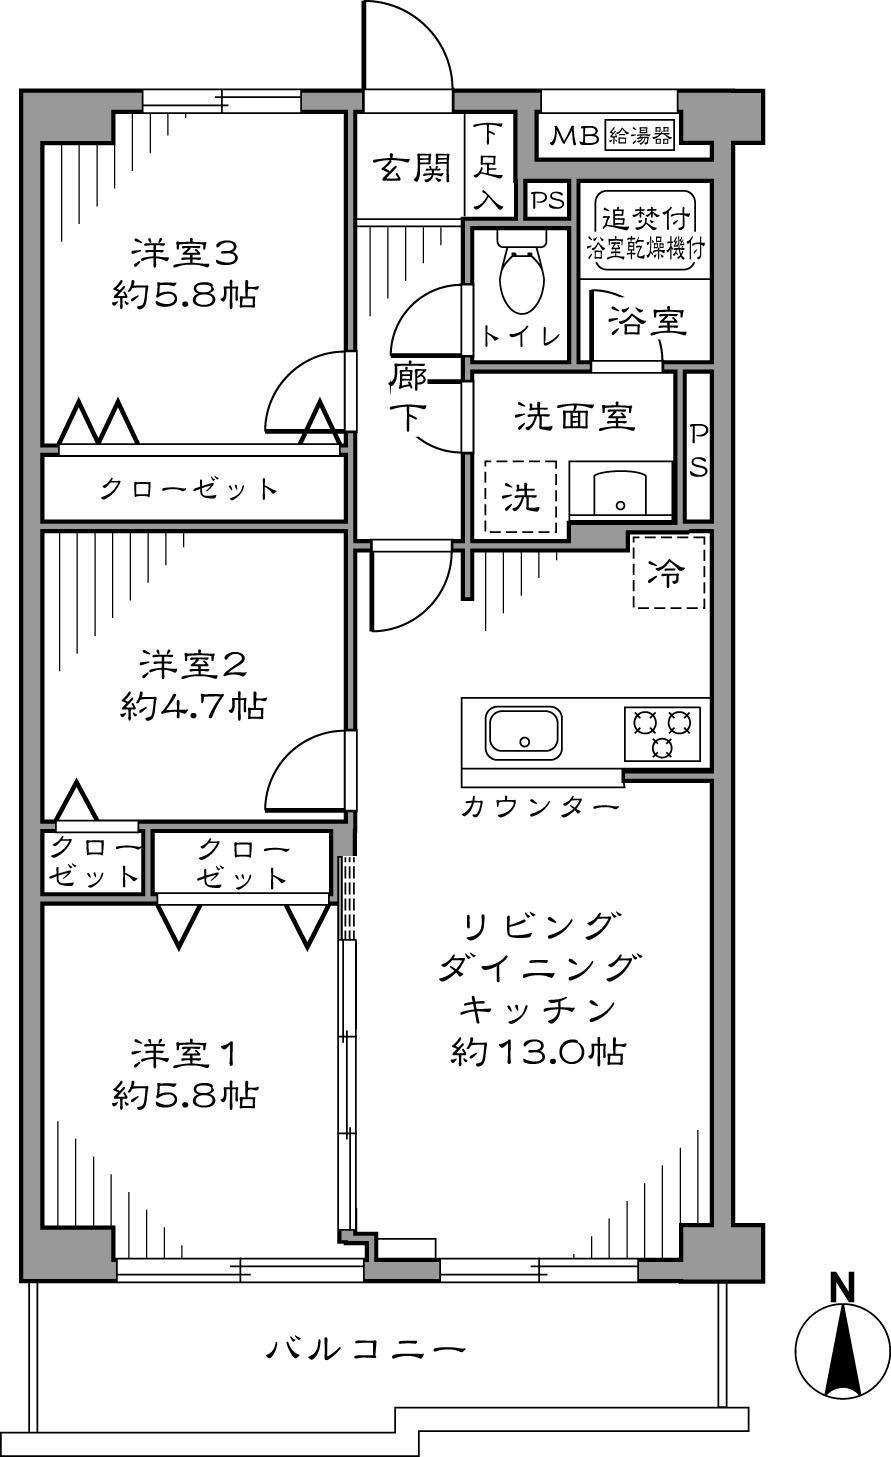 Floor plan. 3LDK61.19 sq m